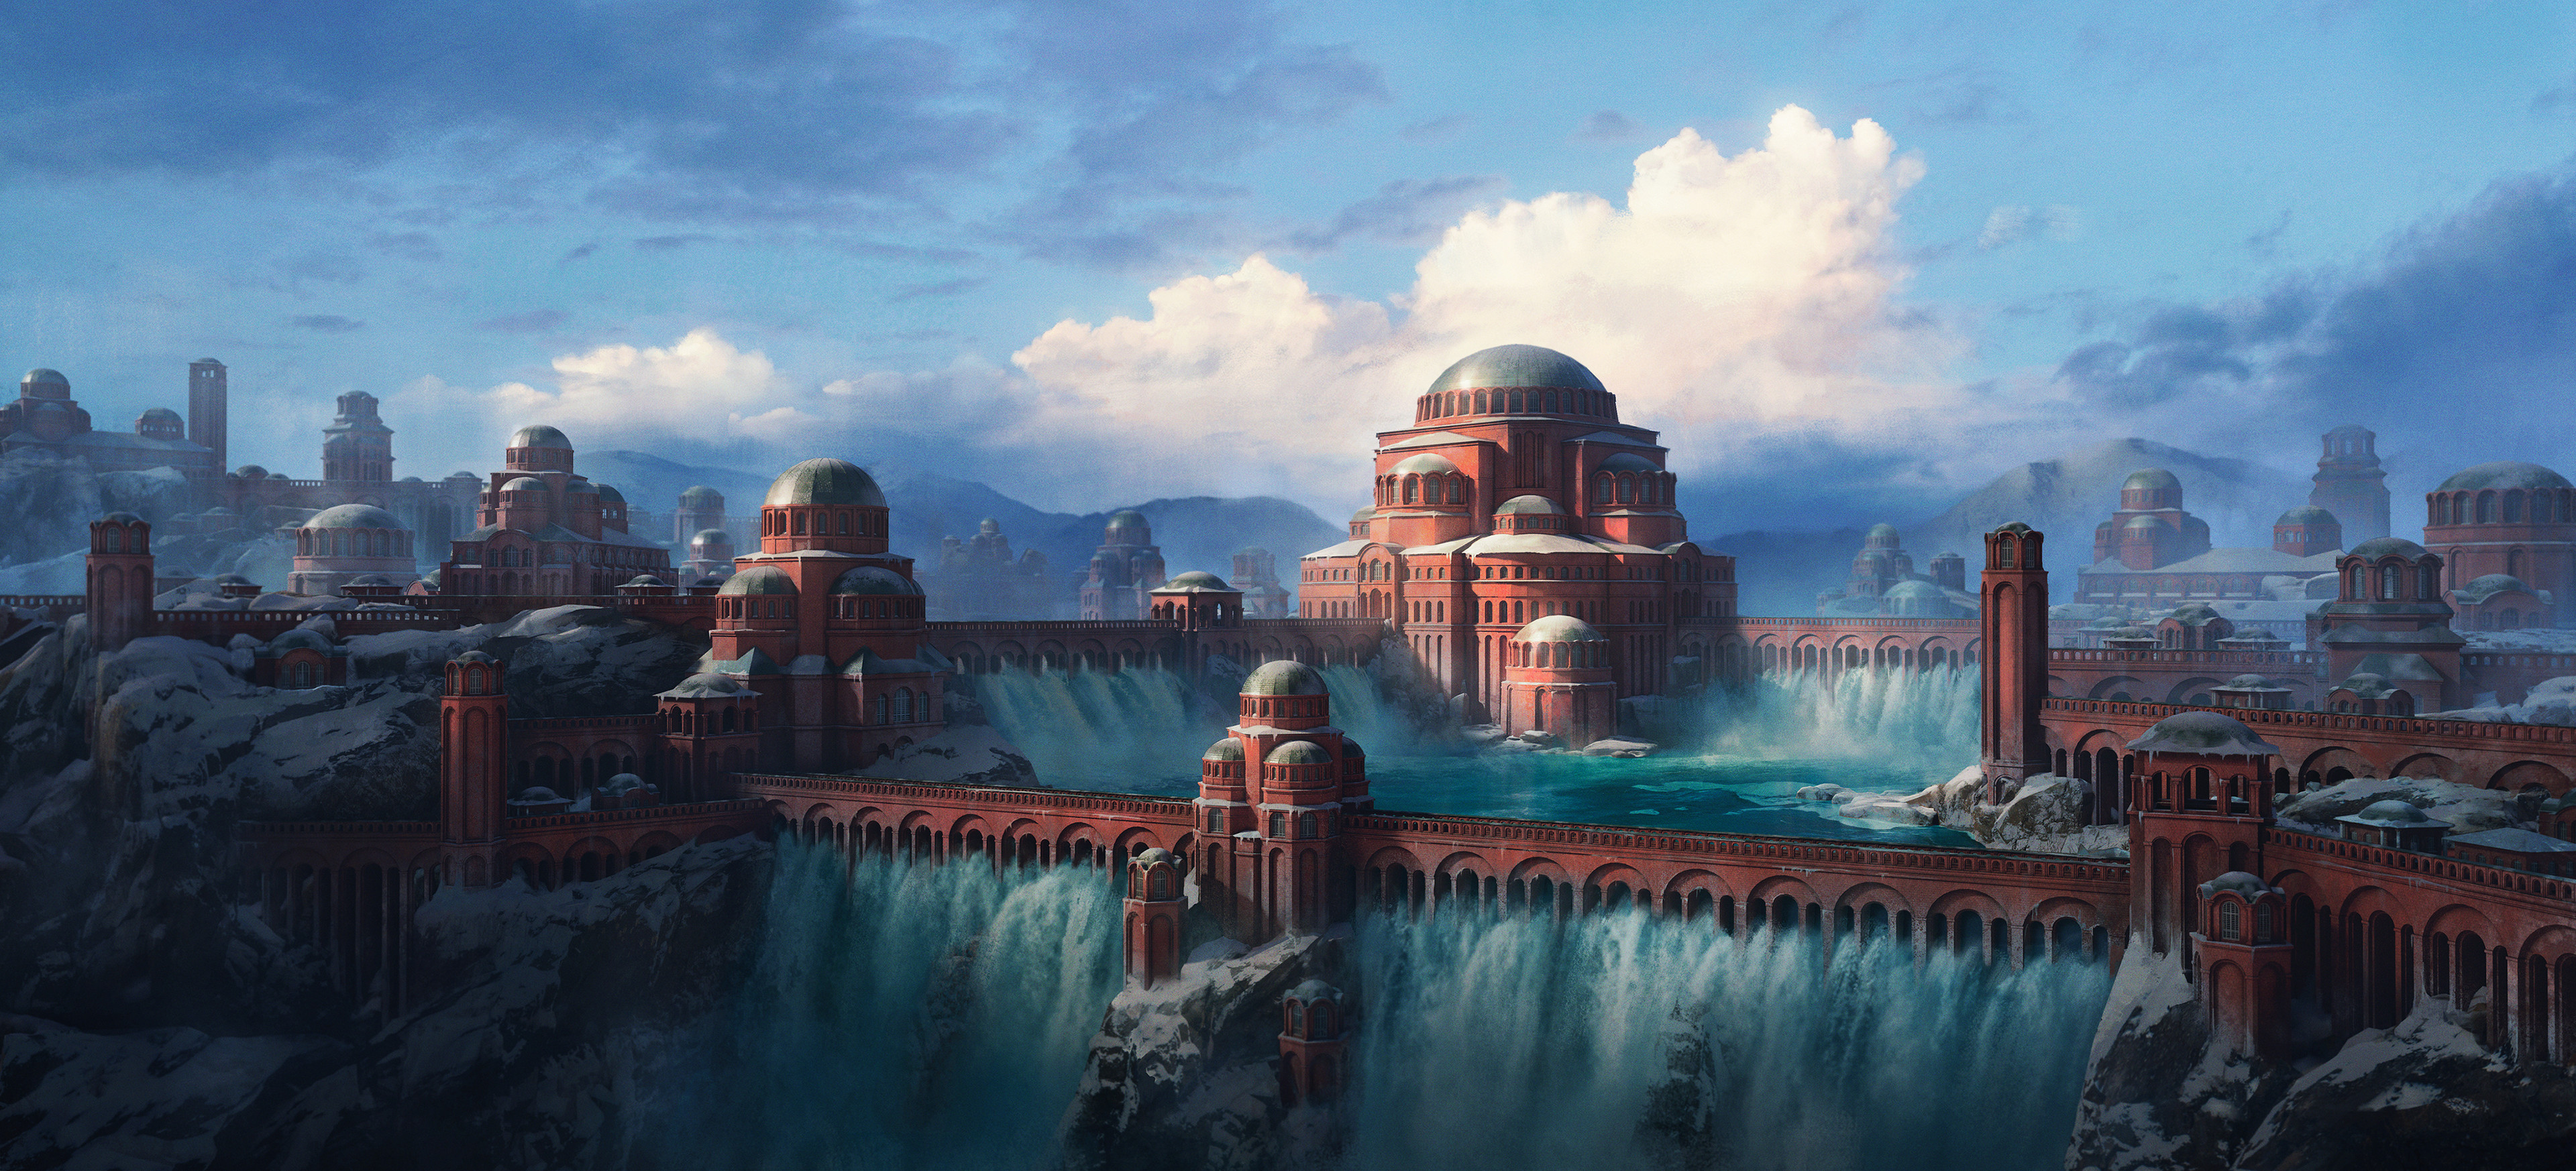 Frozen Byzantine City by Yurii Nikolaiko